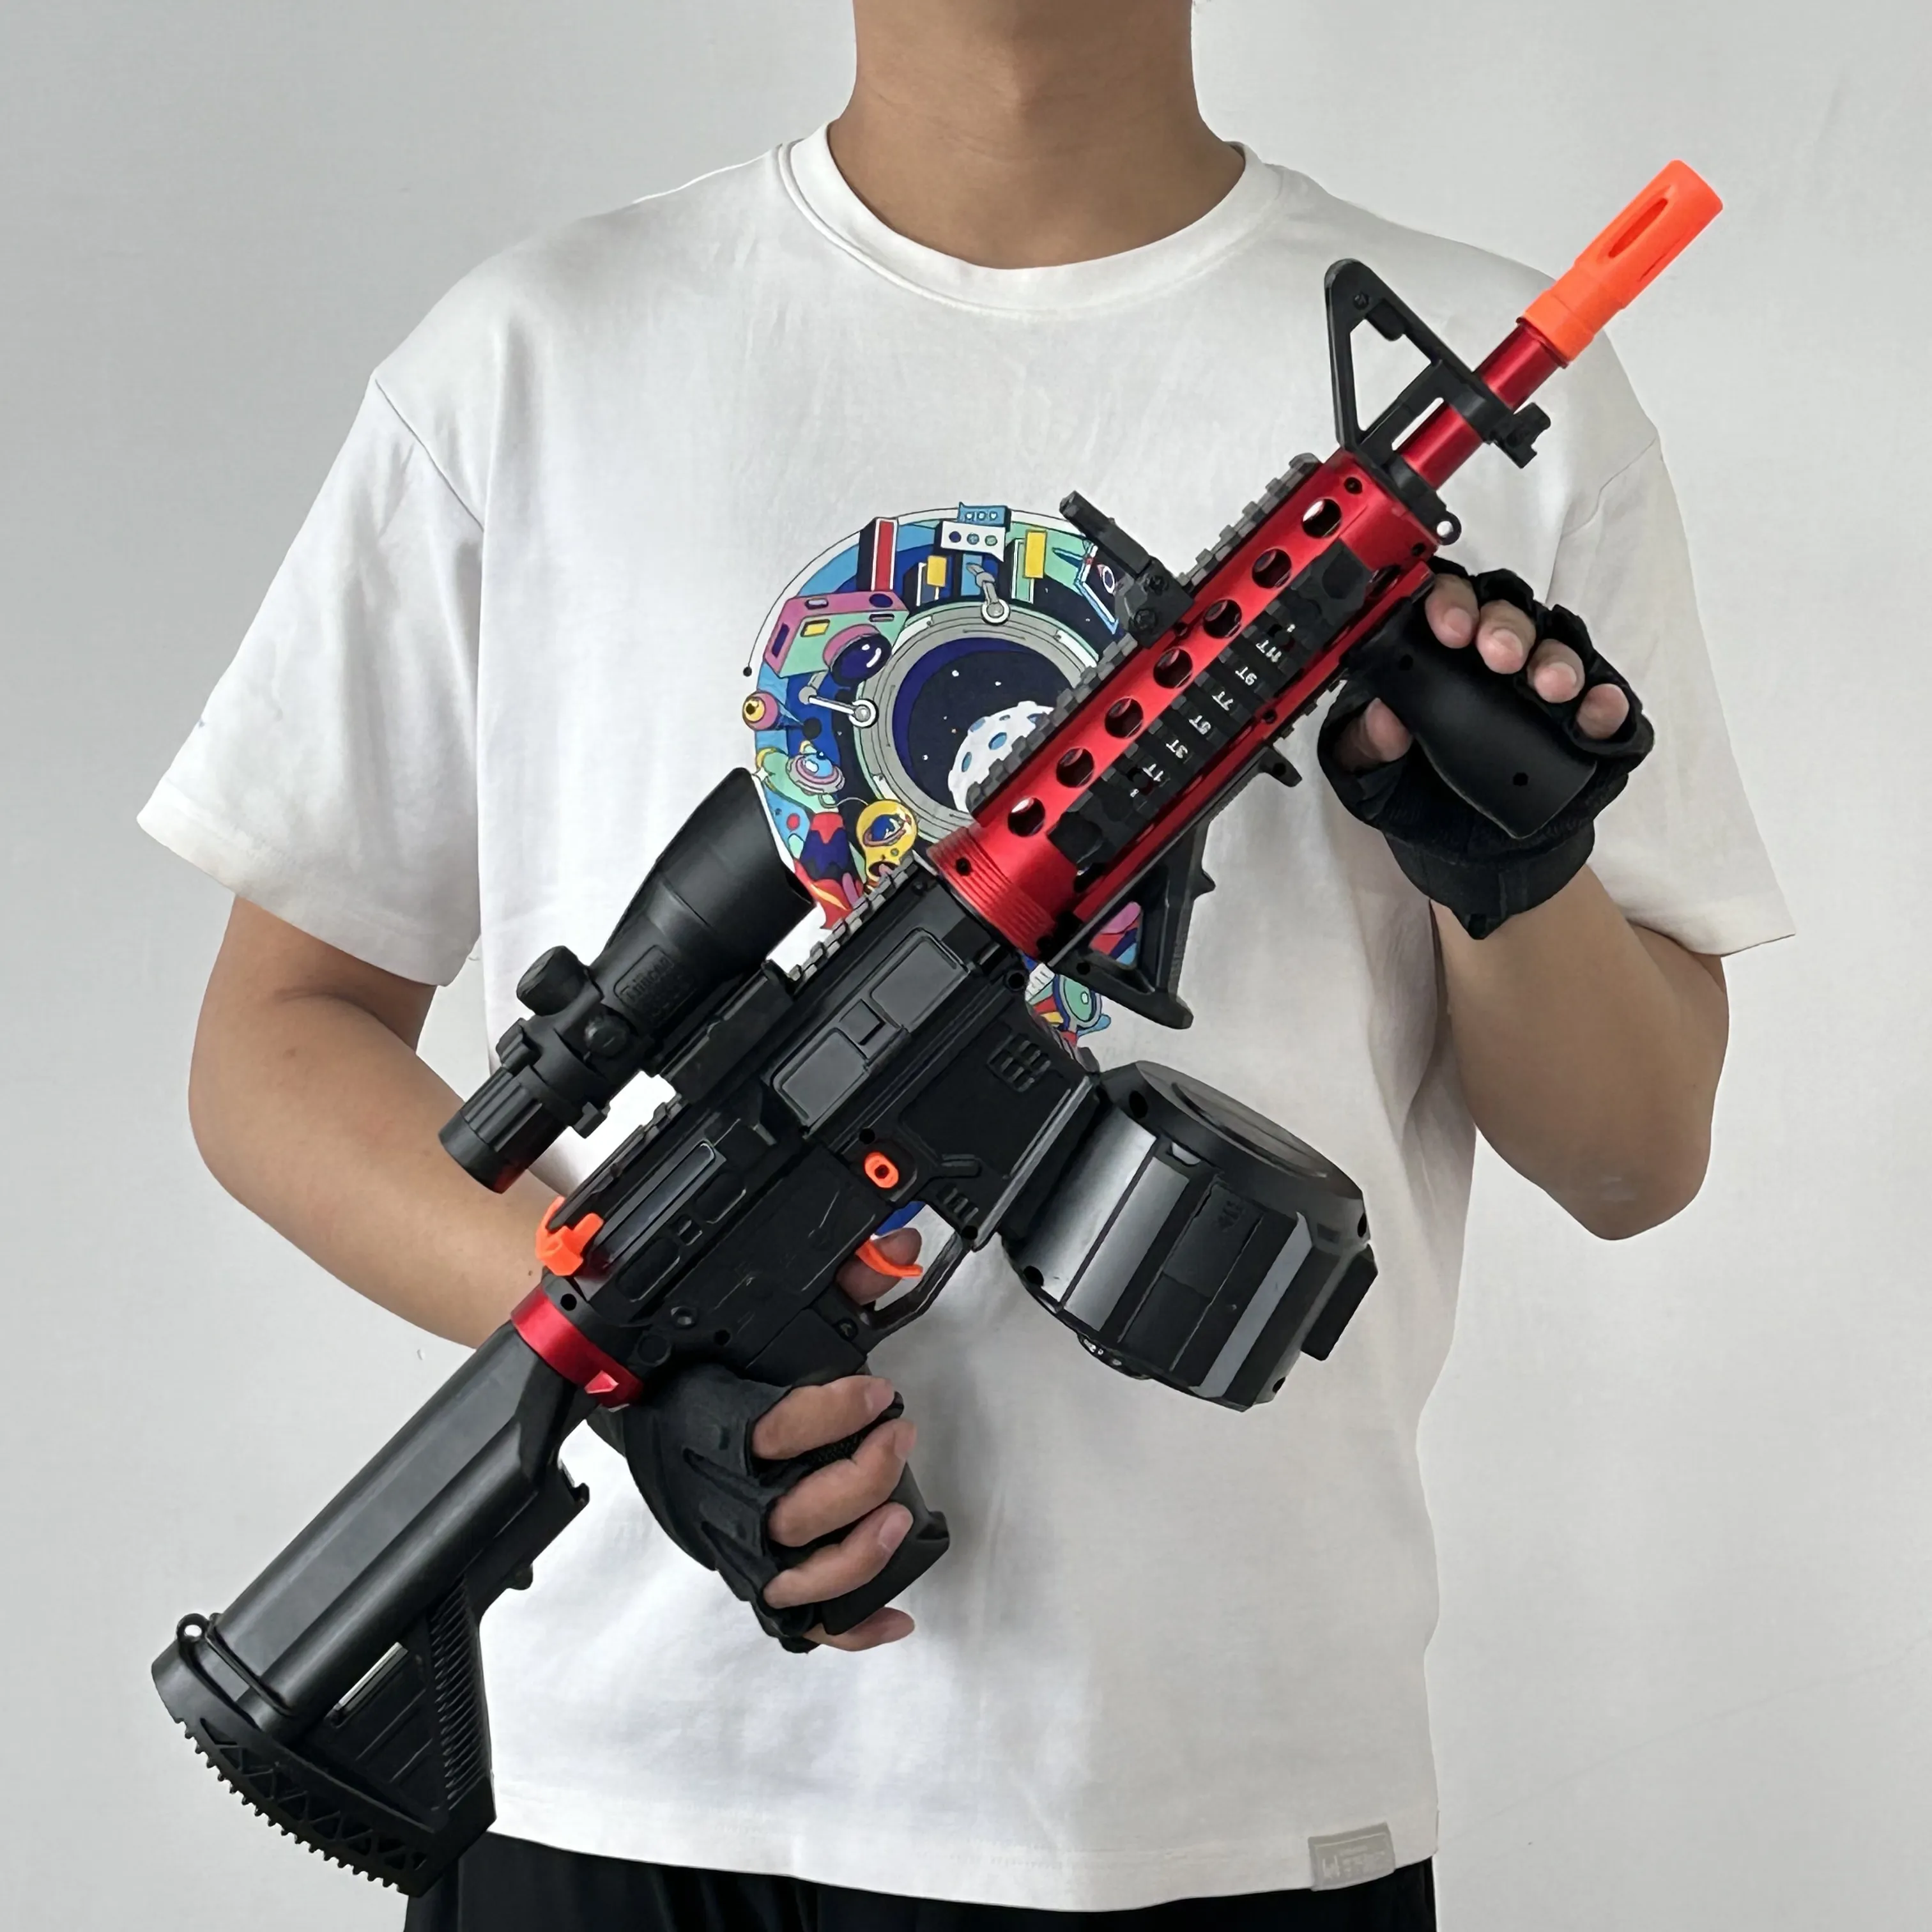 Nova pistola blaster de gel M4a1 M416 gel blaster ak47 vector v2 hk416 ABS blaster automática de metal brinquedo pistola de água